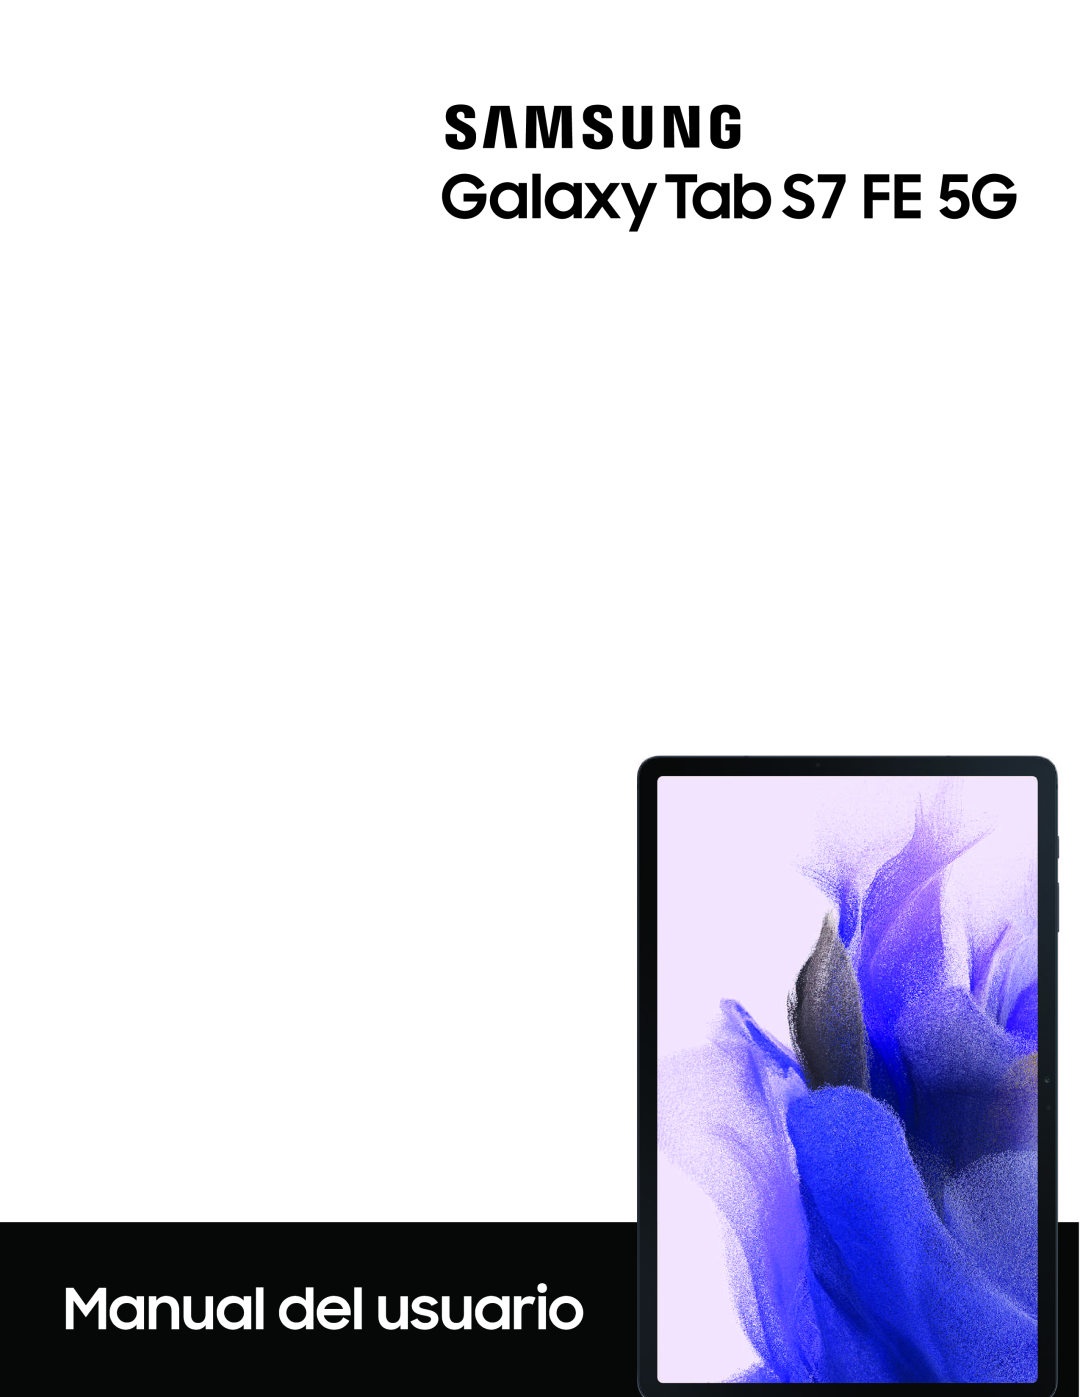 Galaxy Tab S7 FE T-Mobile